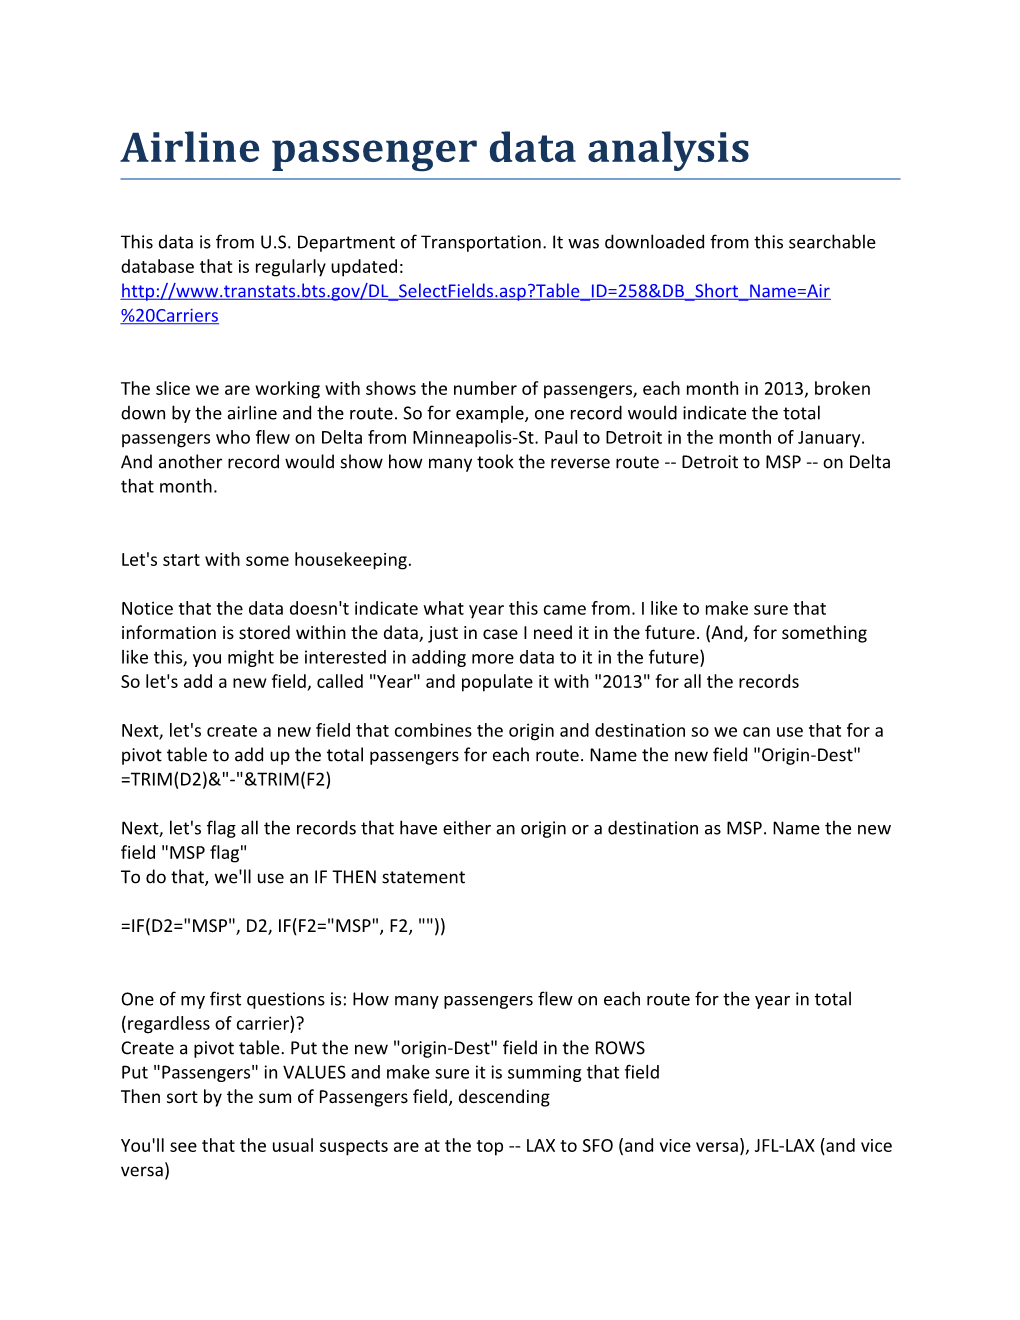 Airline Passenger Data Analysis